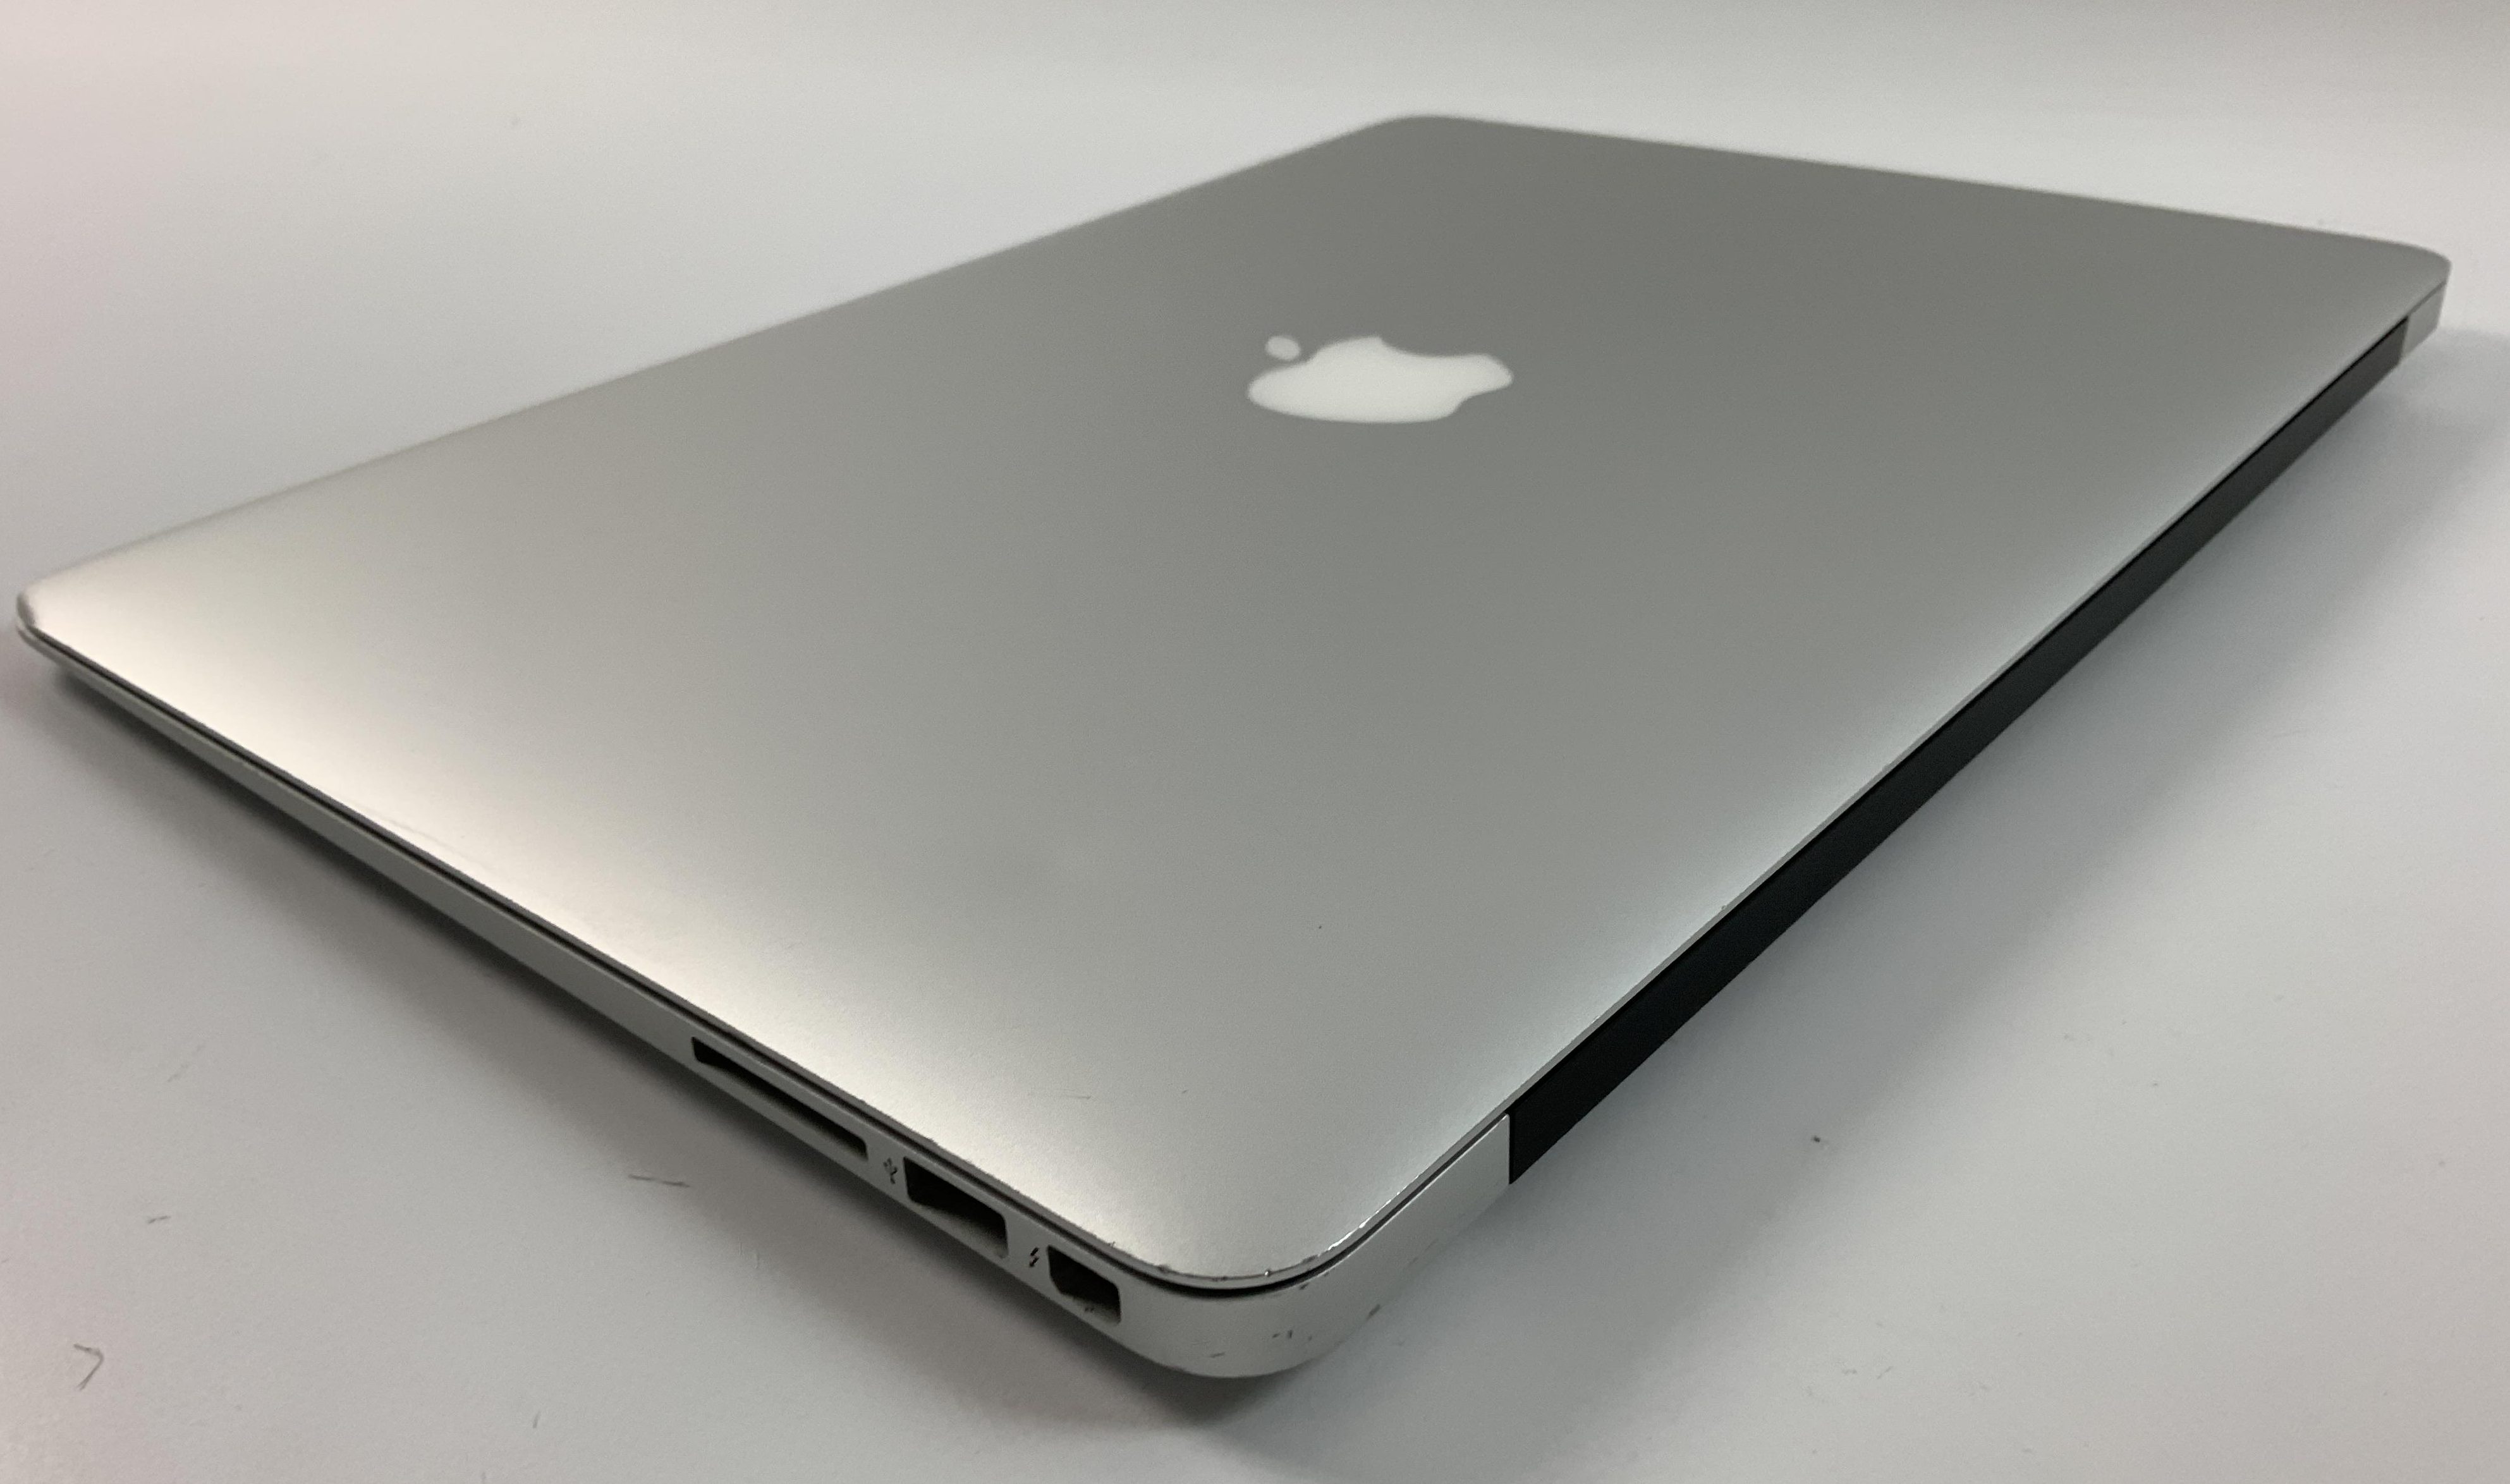 MacBook Air 13" Mid 2017 (Intel Core i5 1.8 GHz 8 GB RAM 128 GB SSD), Intel Core i5 1.8 GHz, 8 GB RAM, 128 GB SSD, Kuva 4